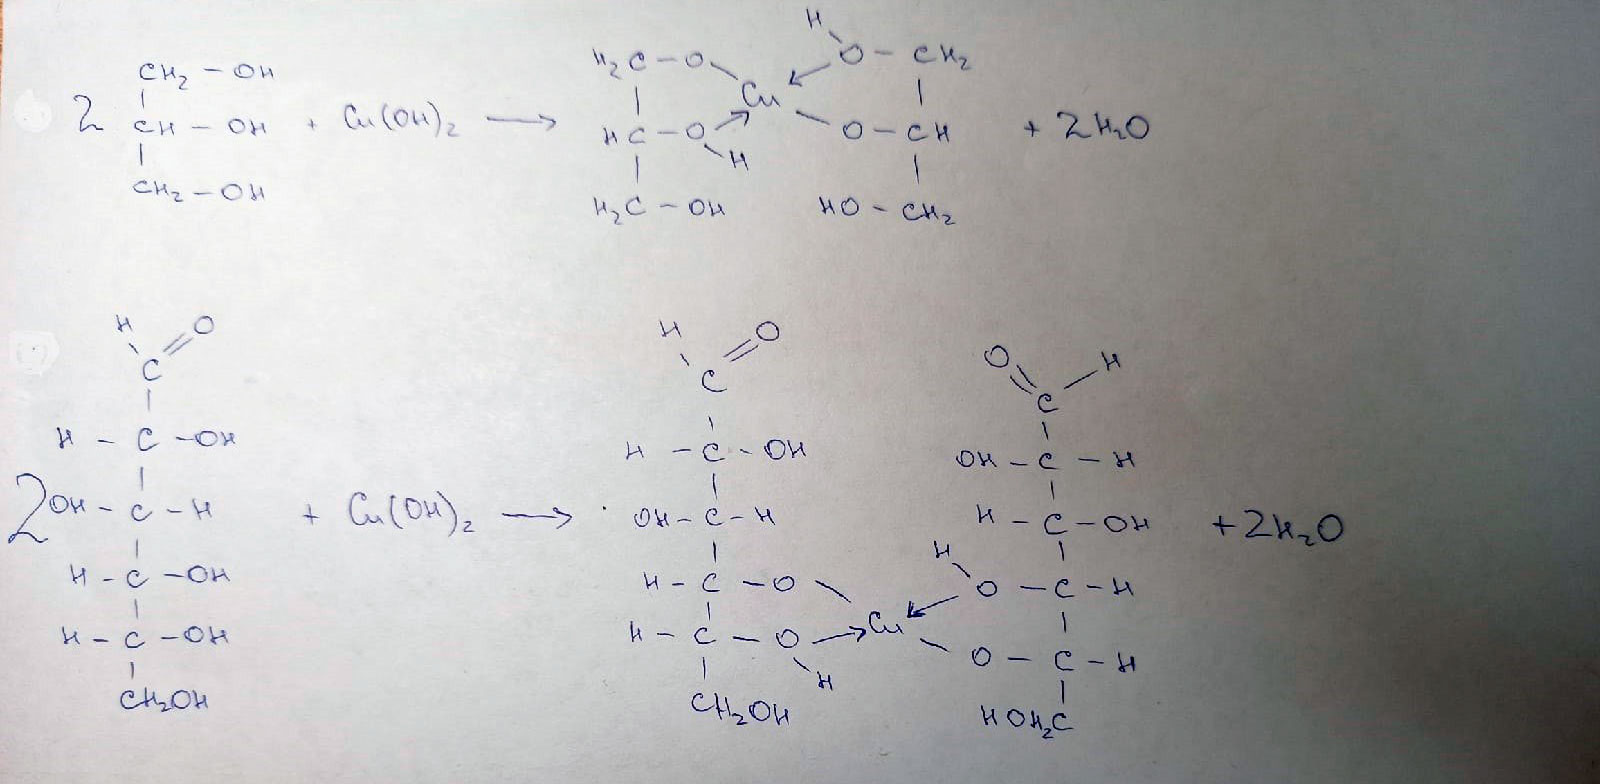 Глицерин и оксид меди. Формальдегид и гидроксид меди 2. Глицерин и гидроксид меди 2. Глицерин и оксид меди 2. Глицерин реагирует с гидроксидом меди 2